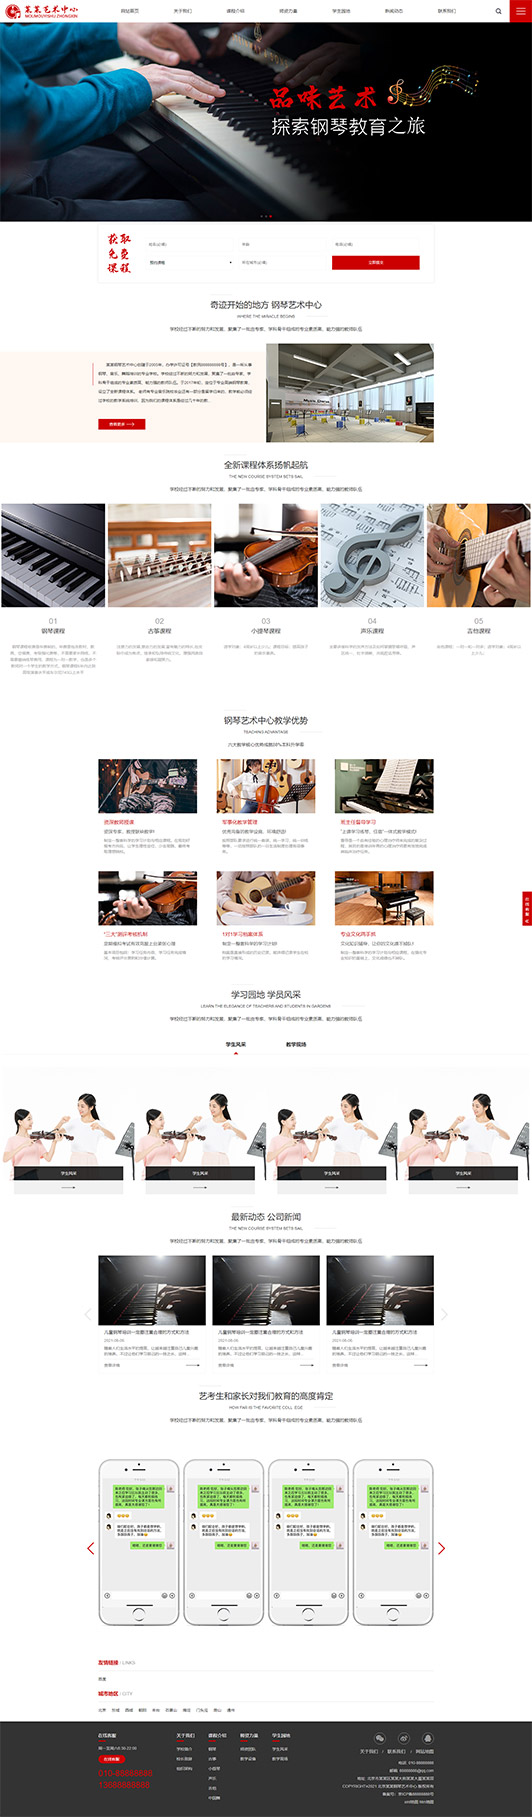 果洛钢琴艺术培训公司响应式企业网站